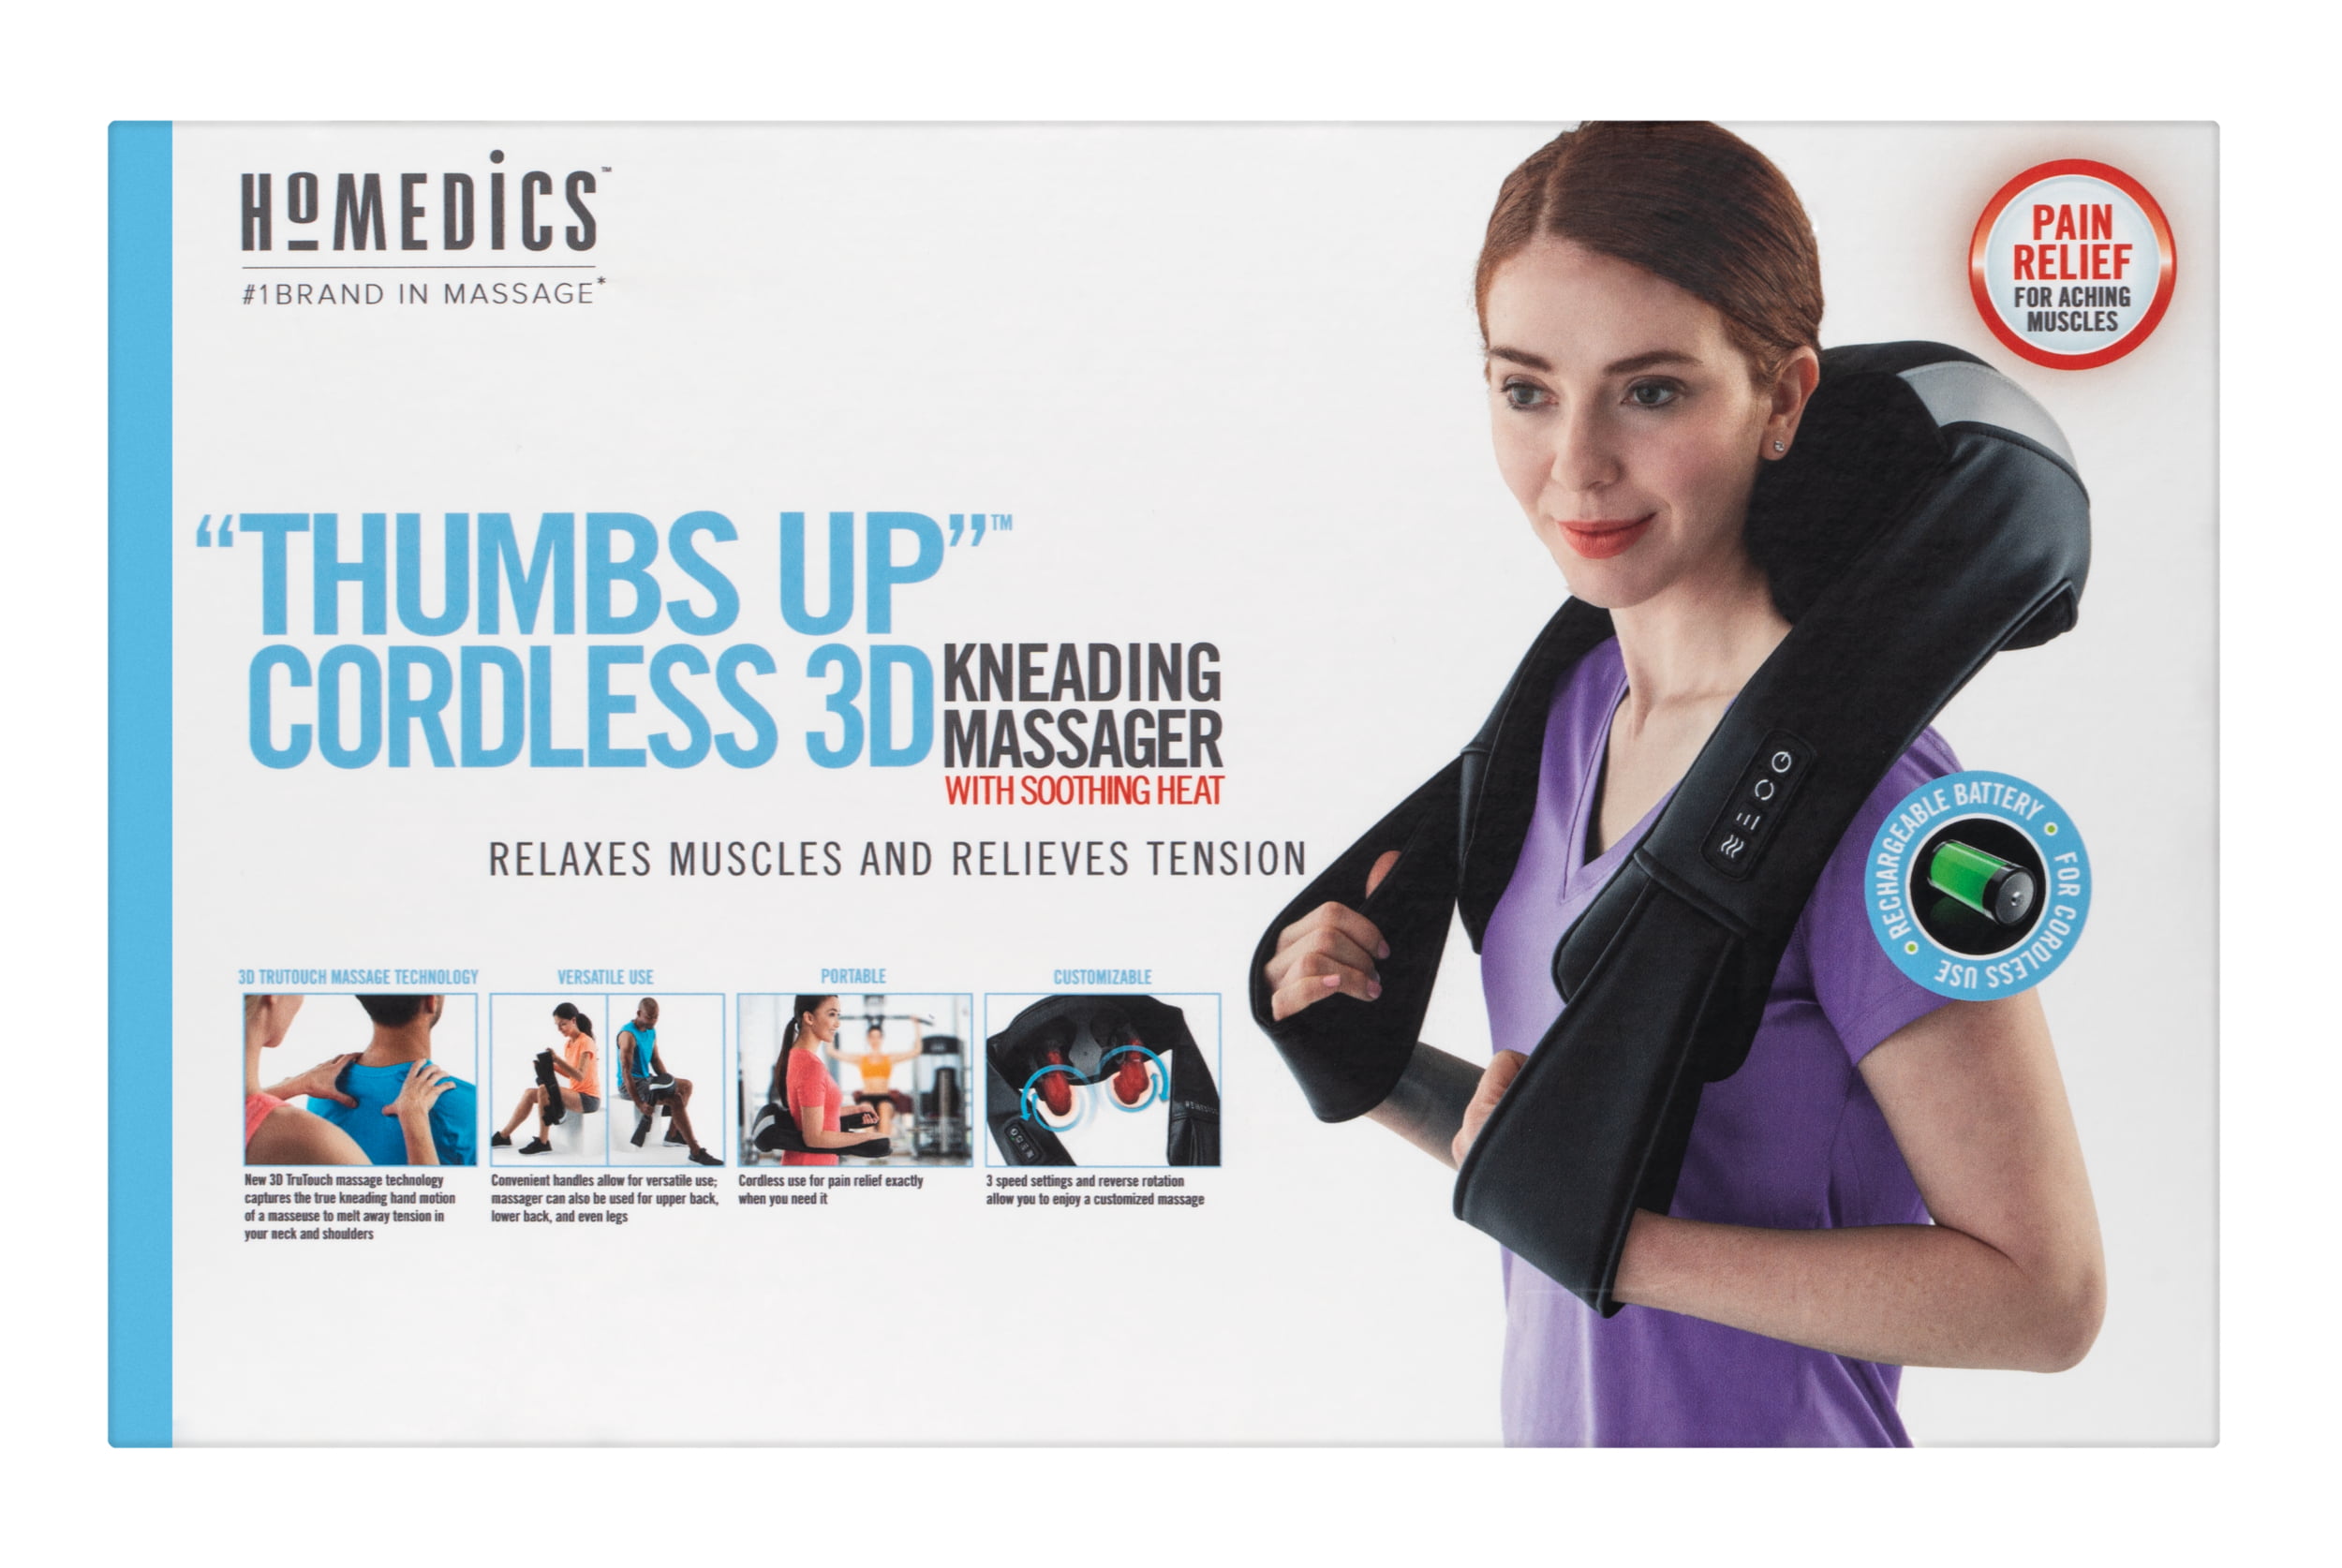 HoMedics massager review: Back, shoulder & neck heated massage #AD